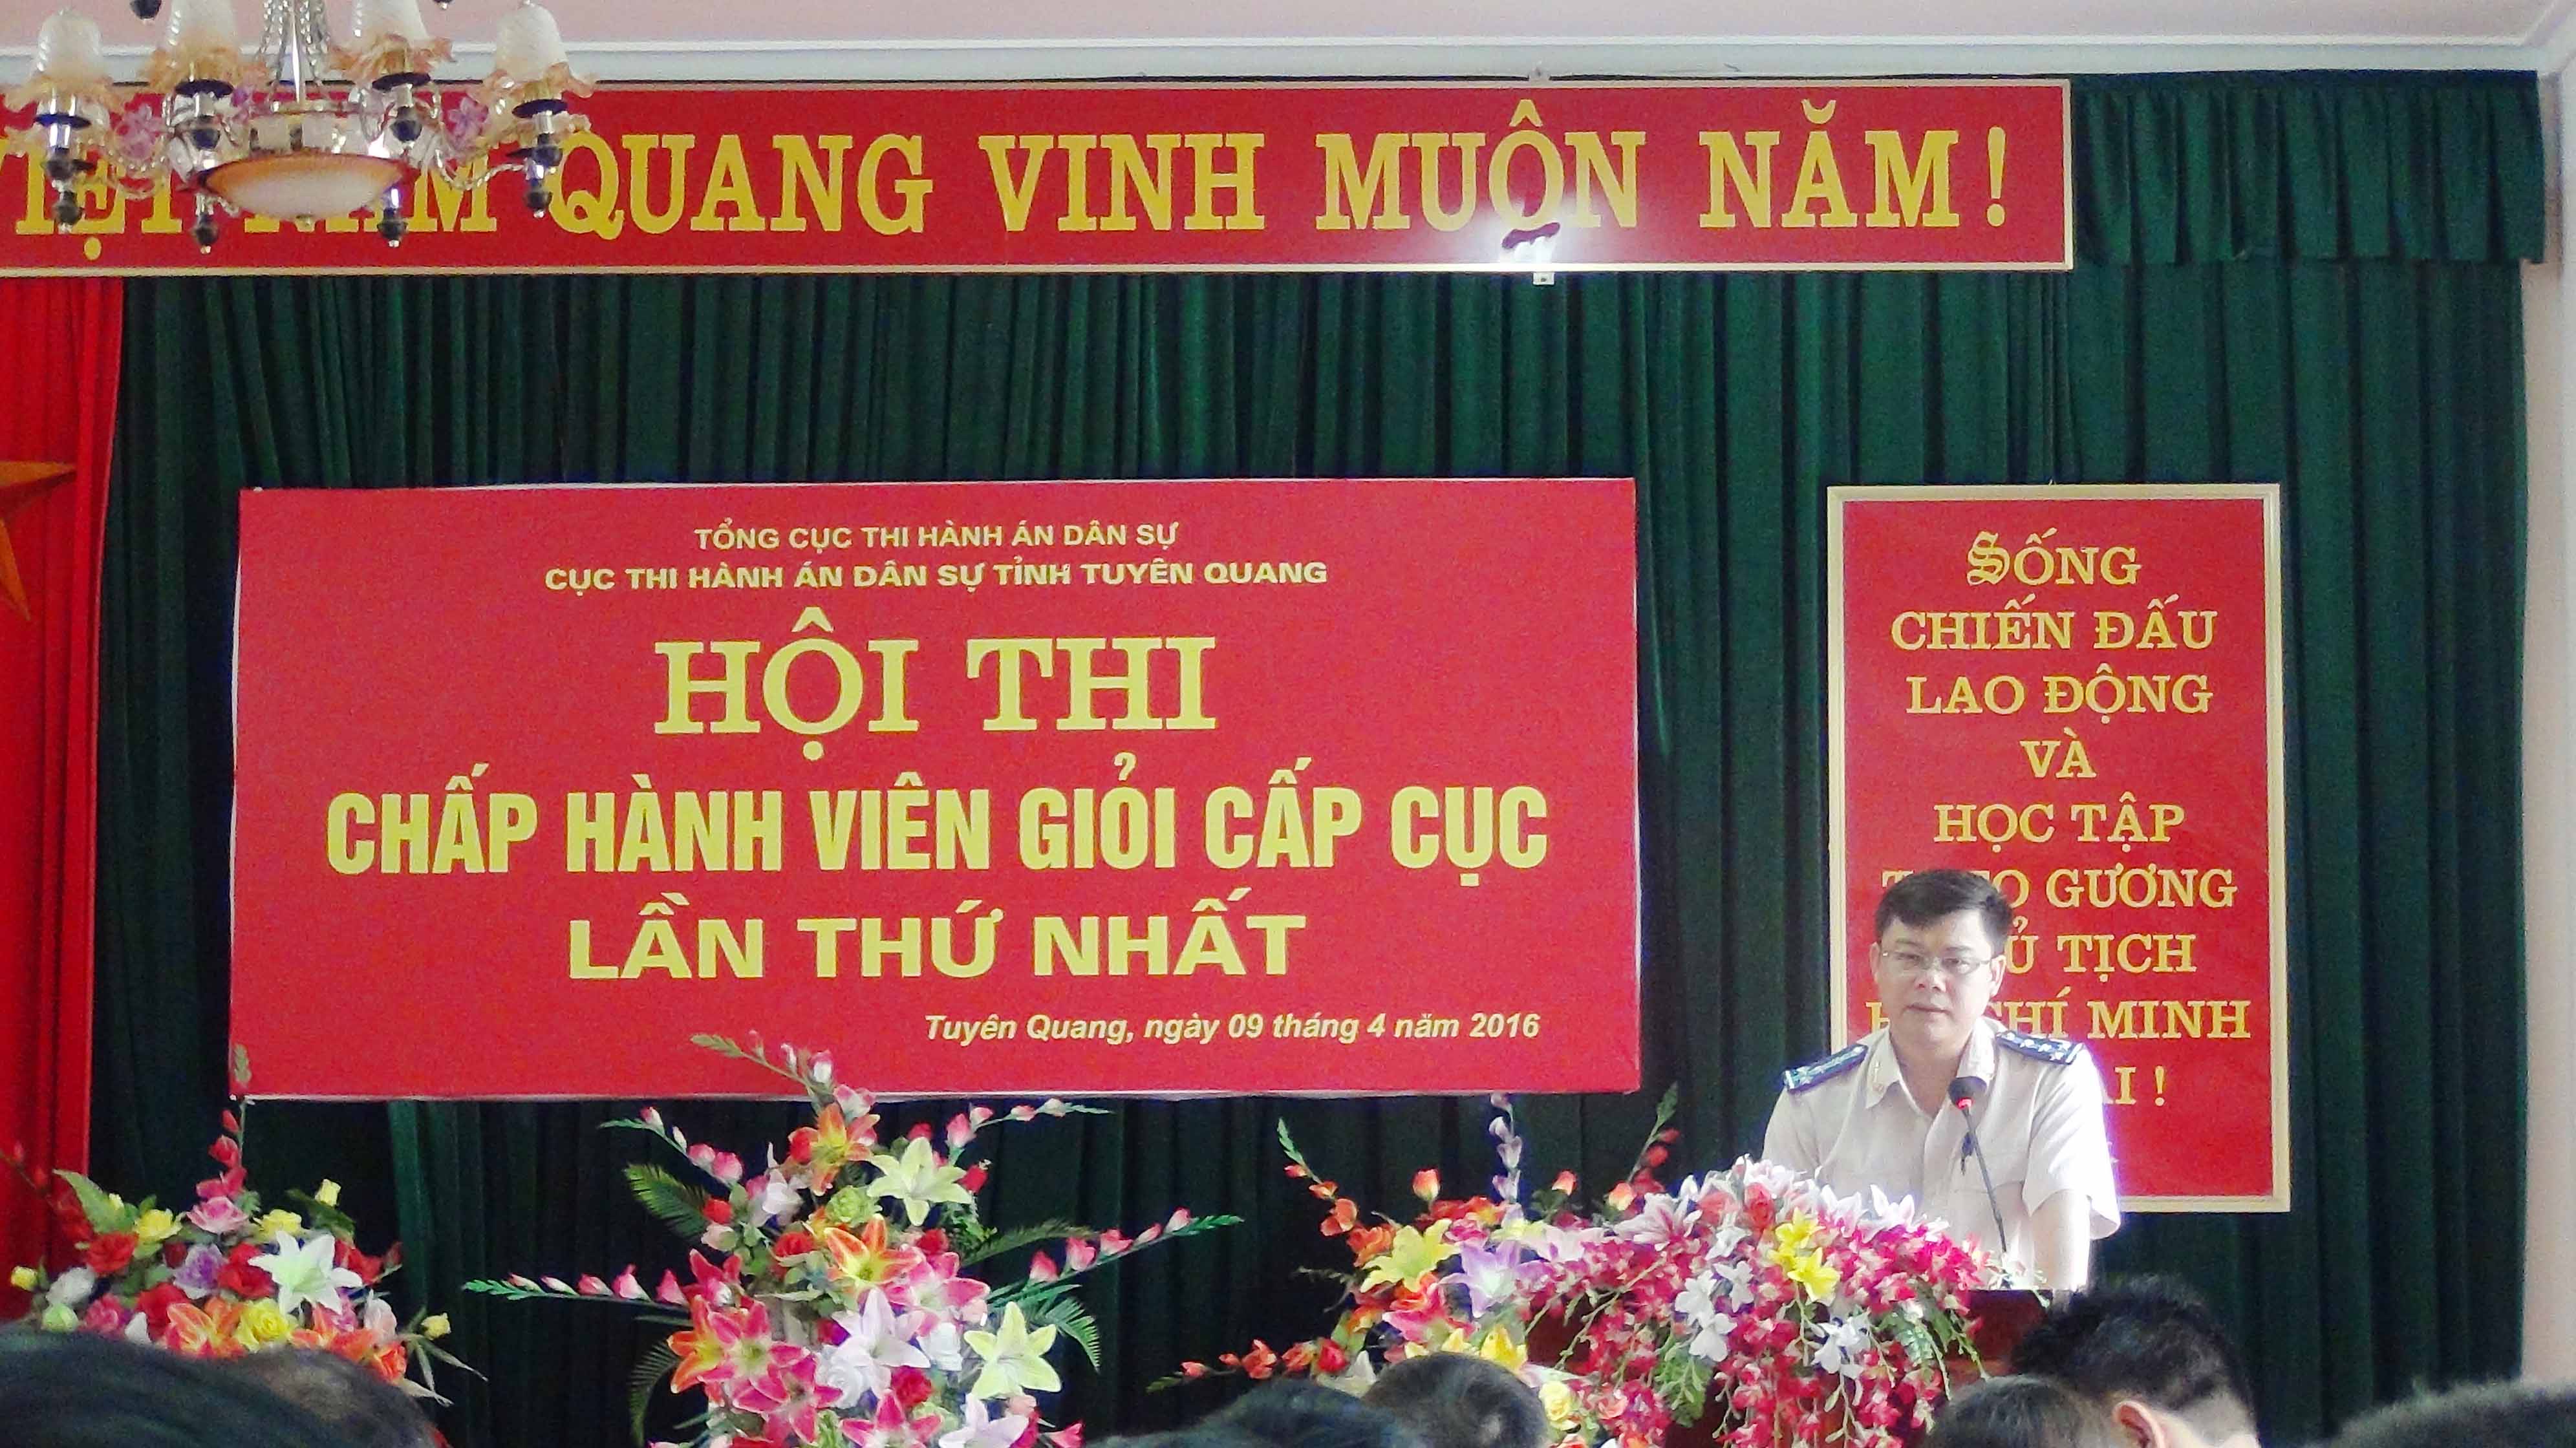 Cục Thi hành án dân sự tỉnh Tuyên Quang tổ chức Hội thi Chấp hành viên giỏi lần thứ nhất